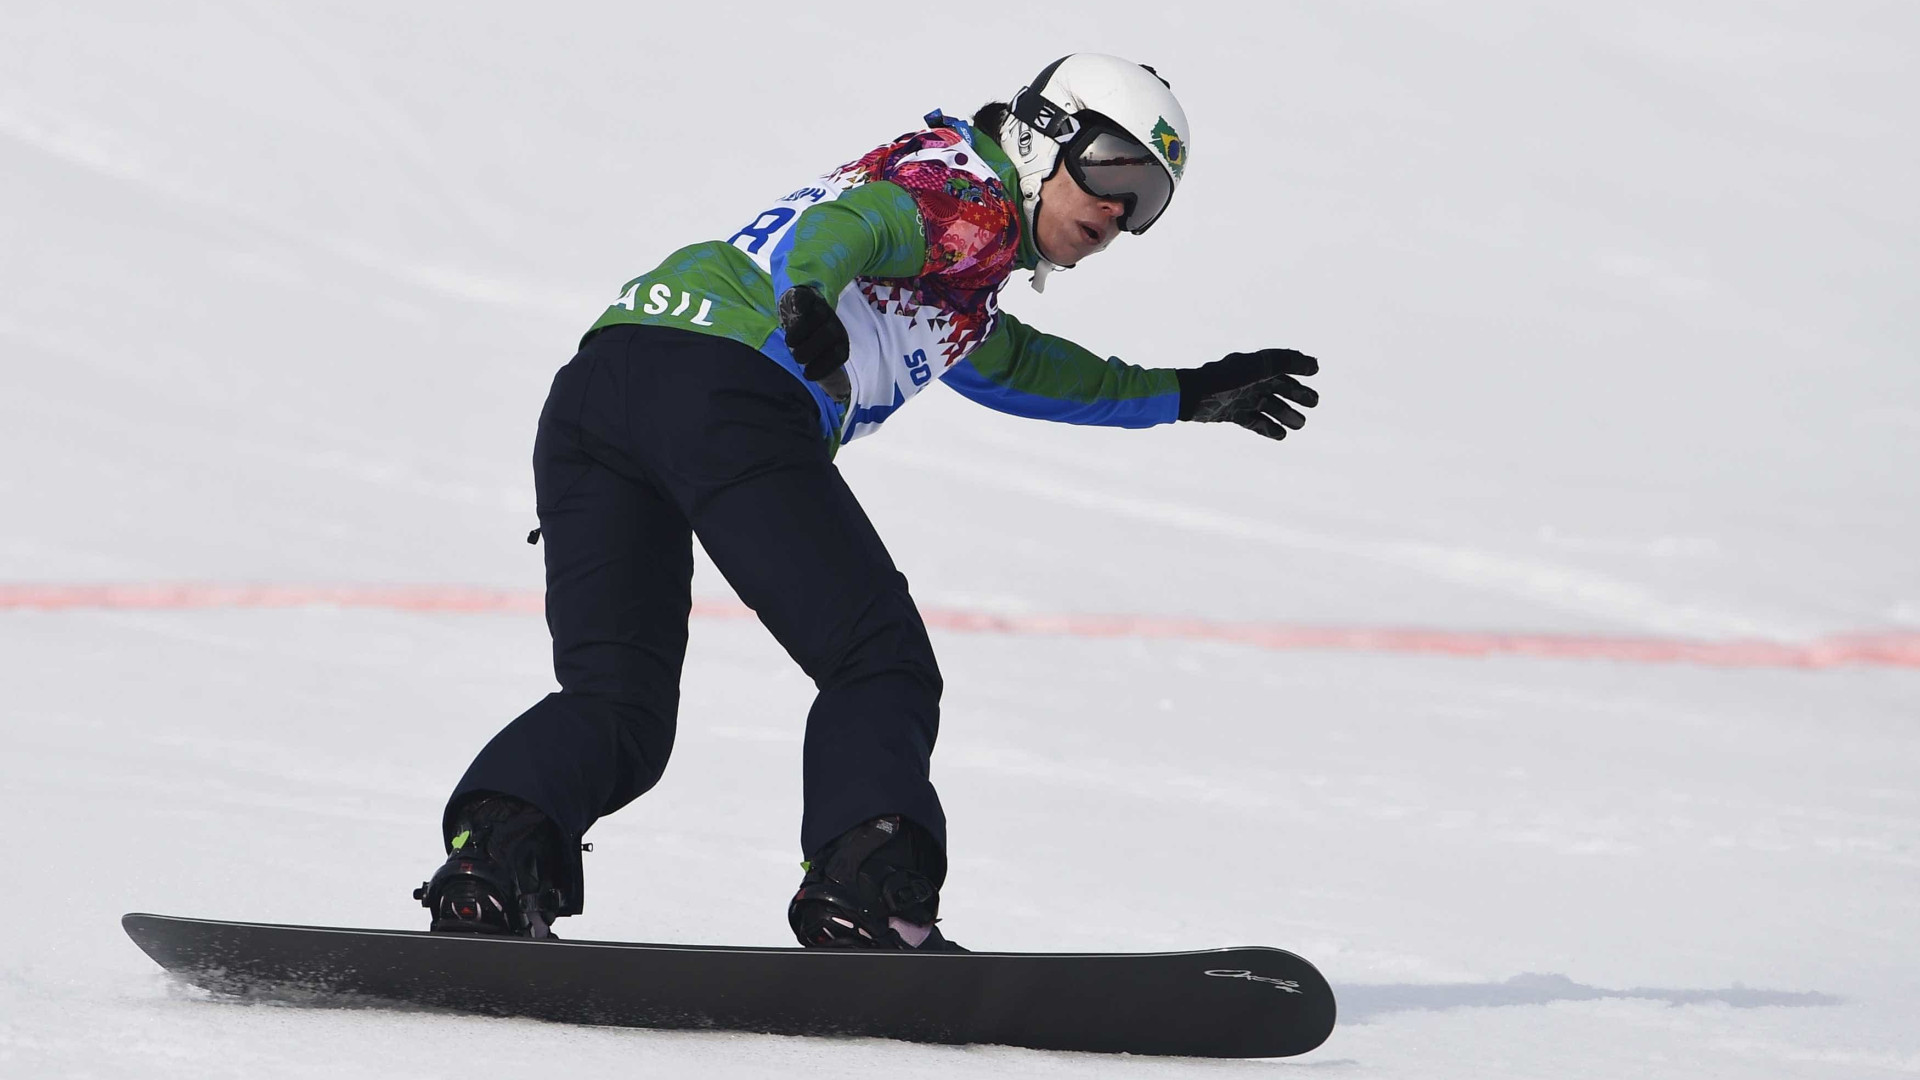 Com dores após queda, snowboarder brasileira abandona Jogos de Inverno